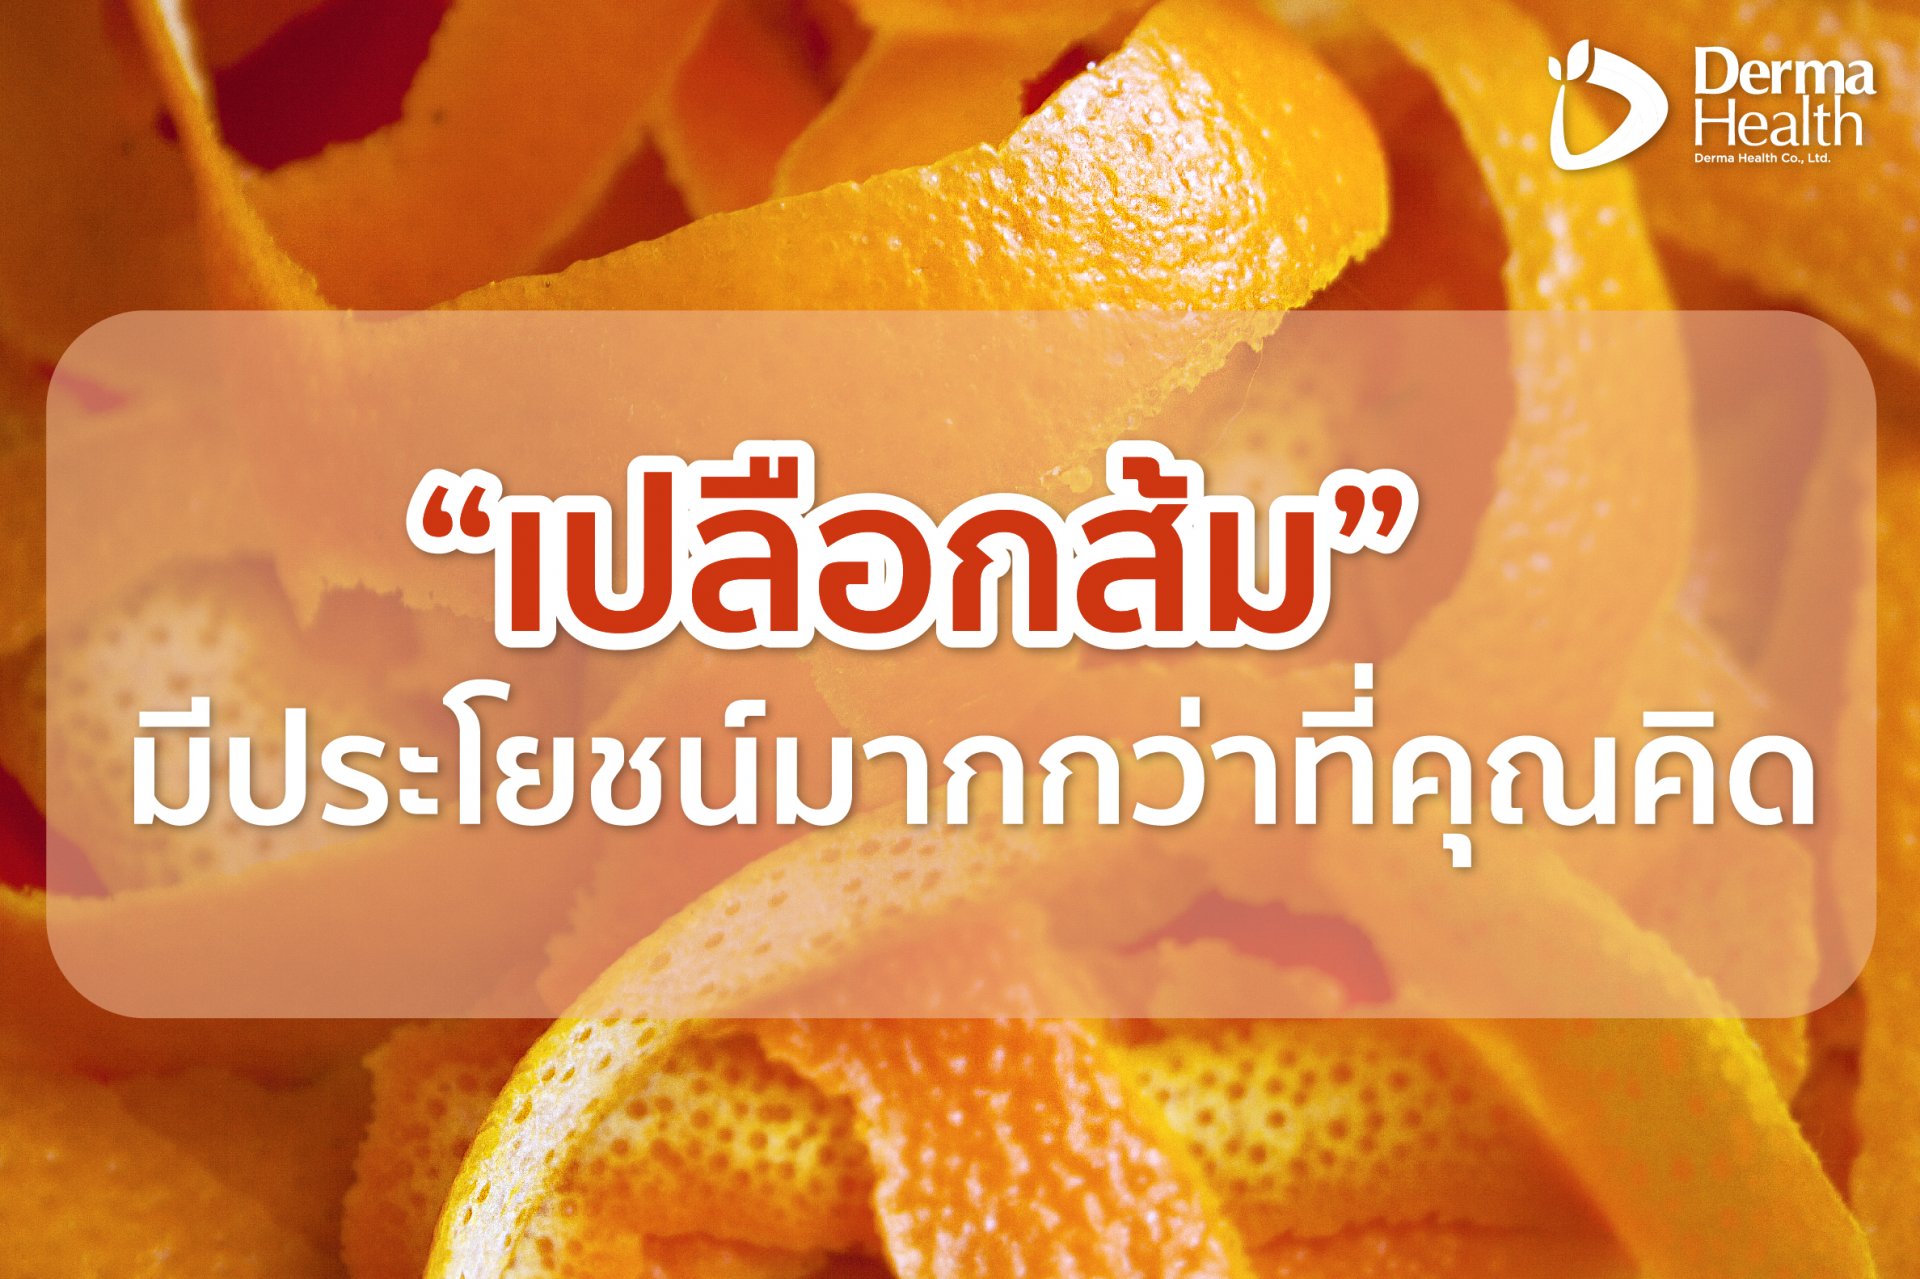 เปลือกส้มมีประโยชน์มากกว่าที่คุณคิด